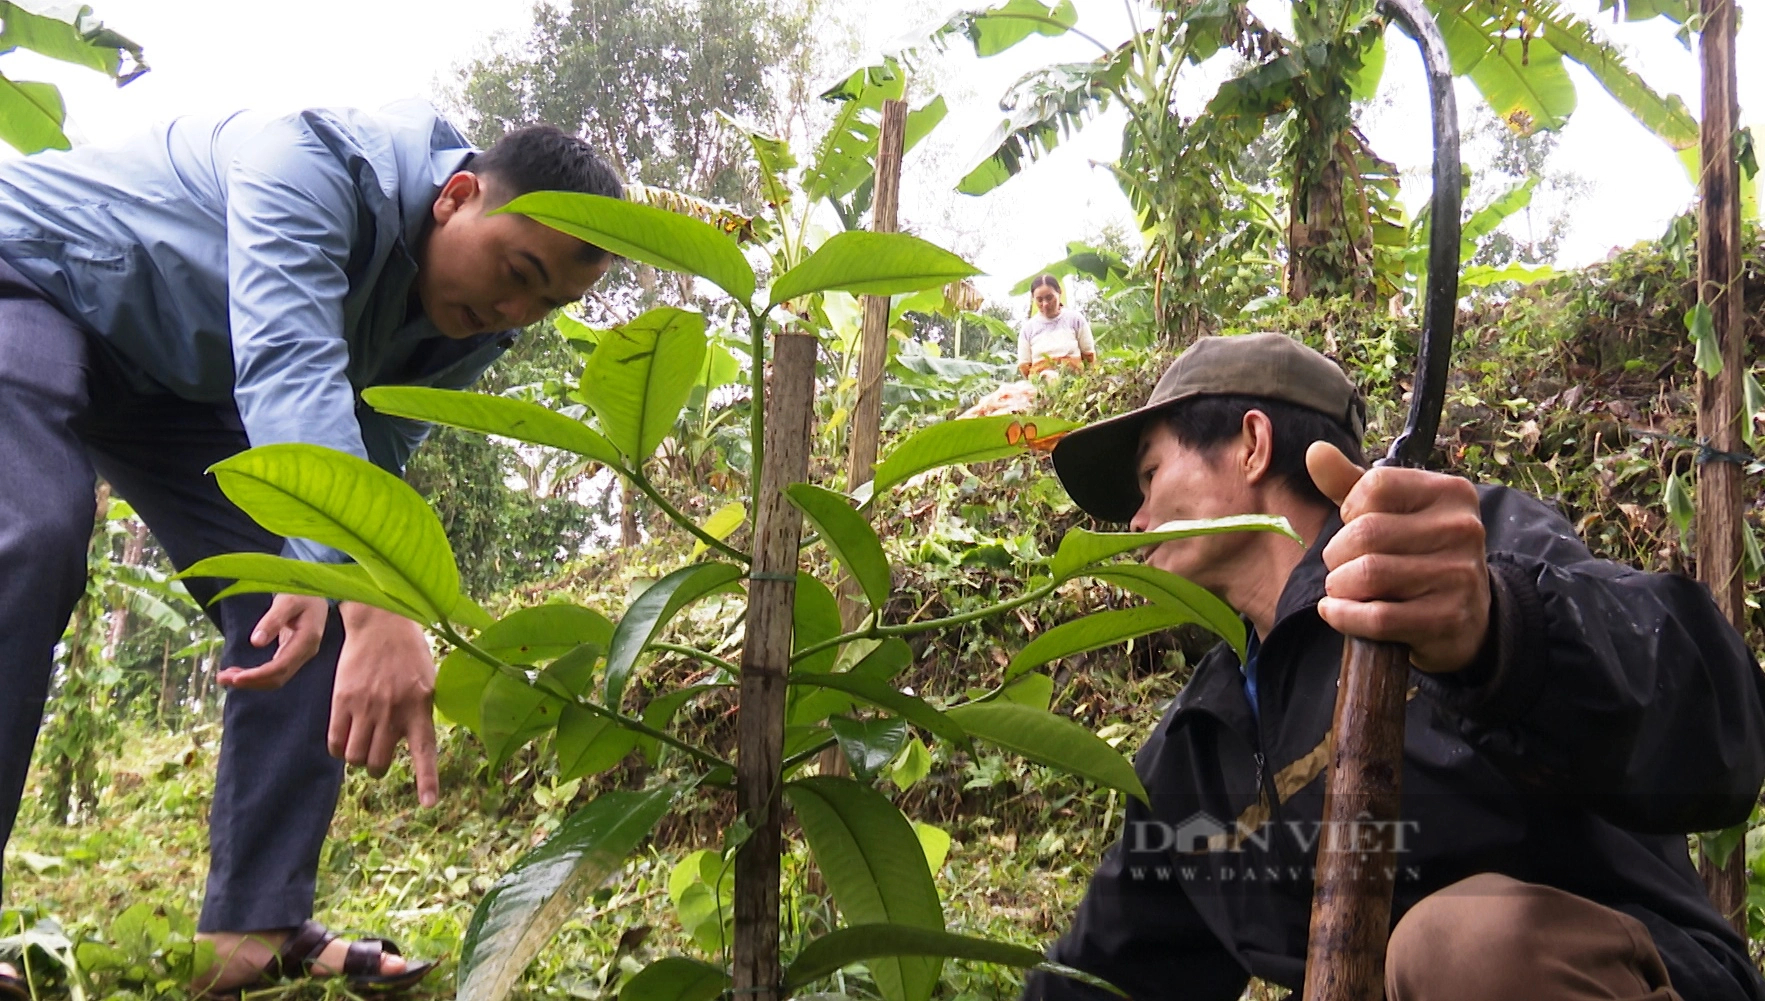 Nông dân Tiên Phước ở Quảng Nam trồng cây ăn quả, vừa hái ra tiền, vừa được hỗ trợ hàng chục tỷ đồng- Ảnh 2.